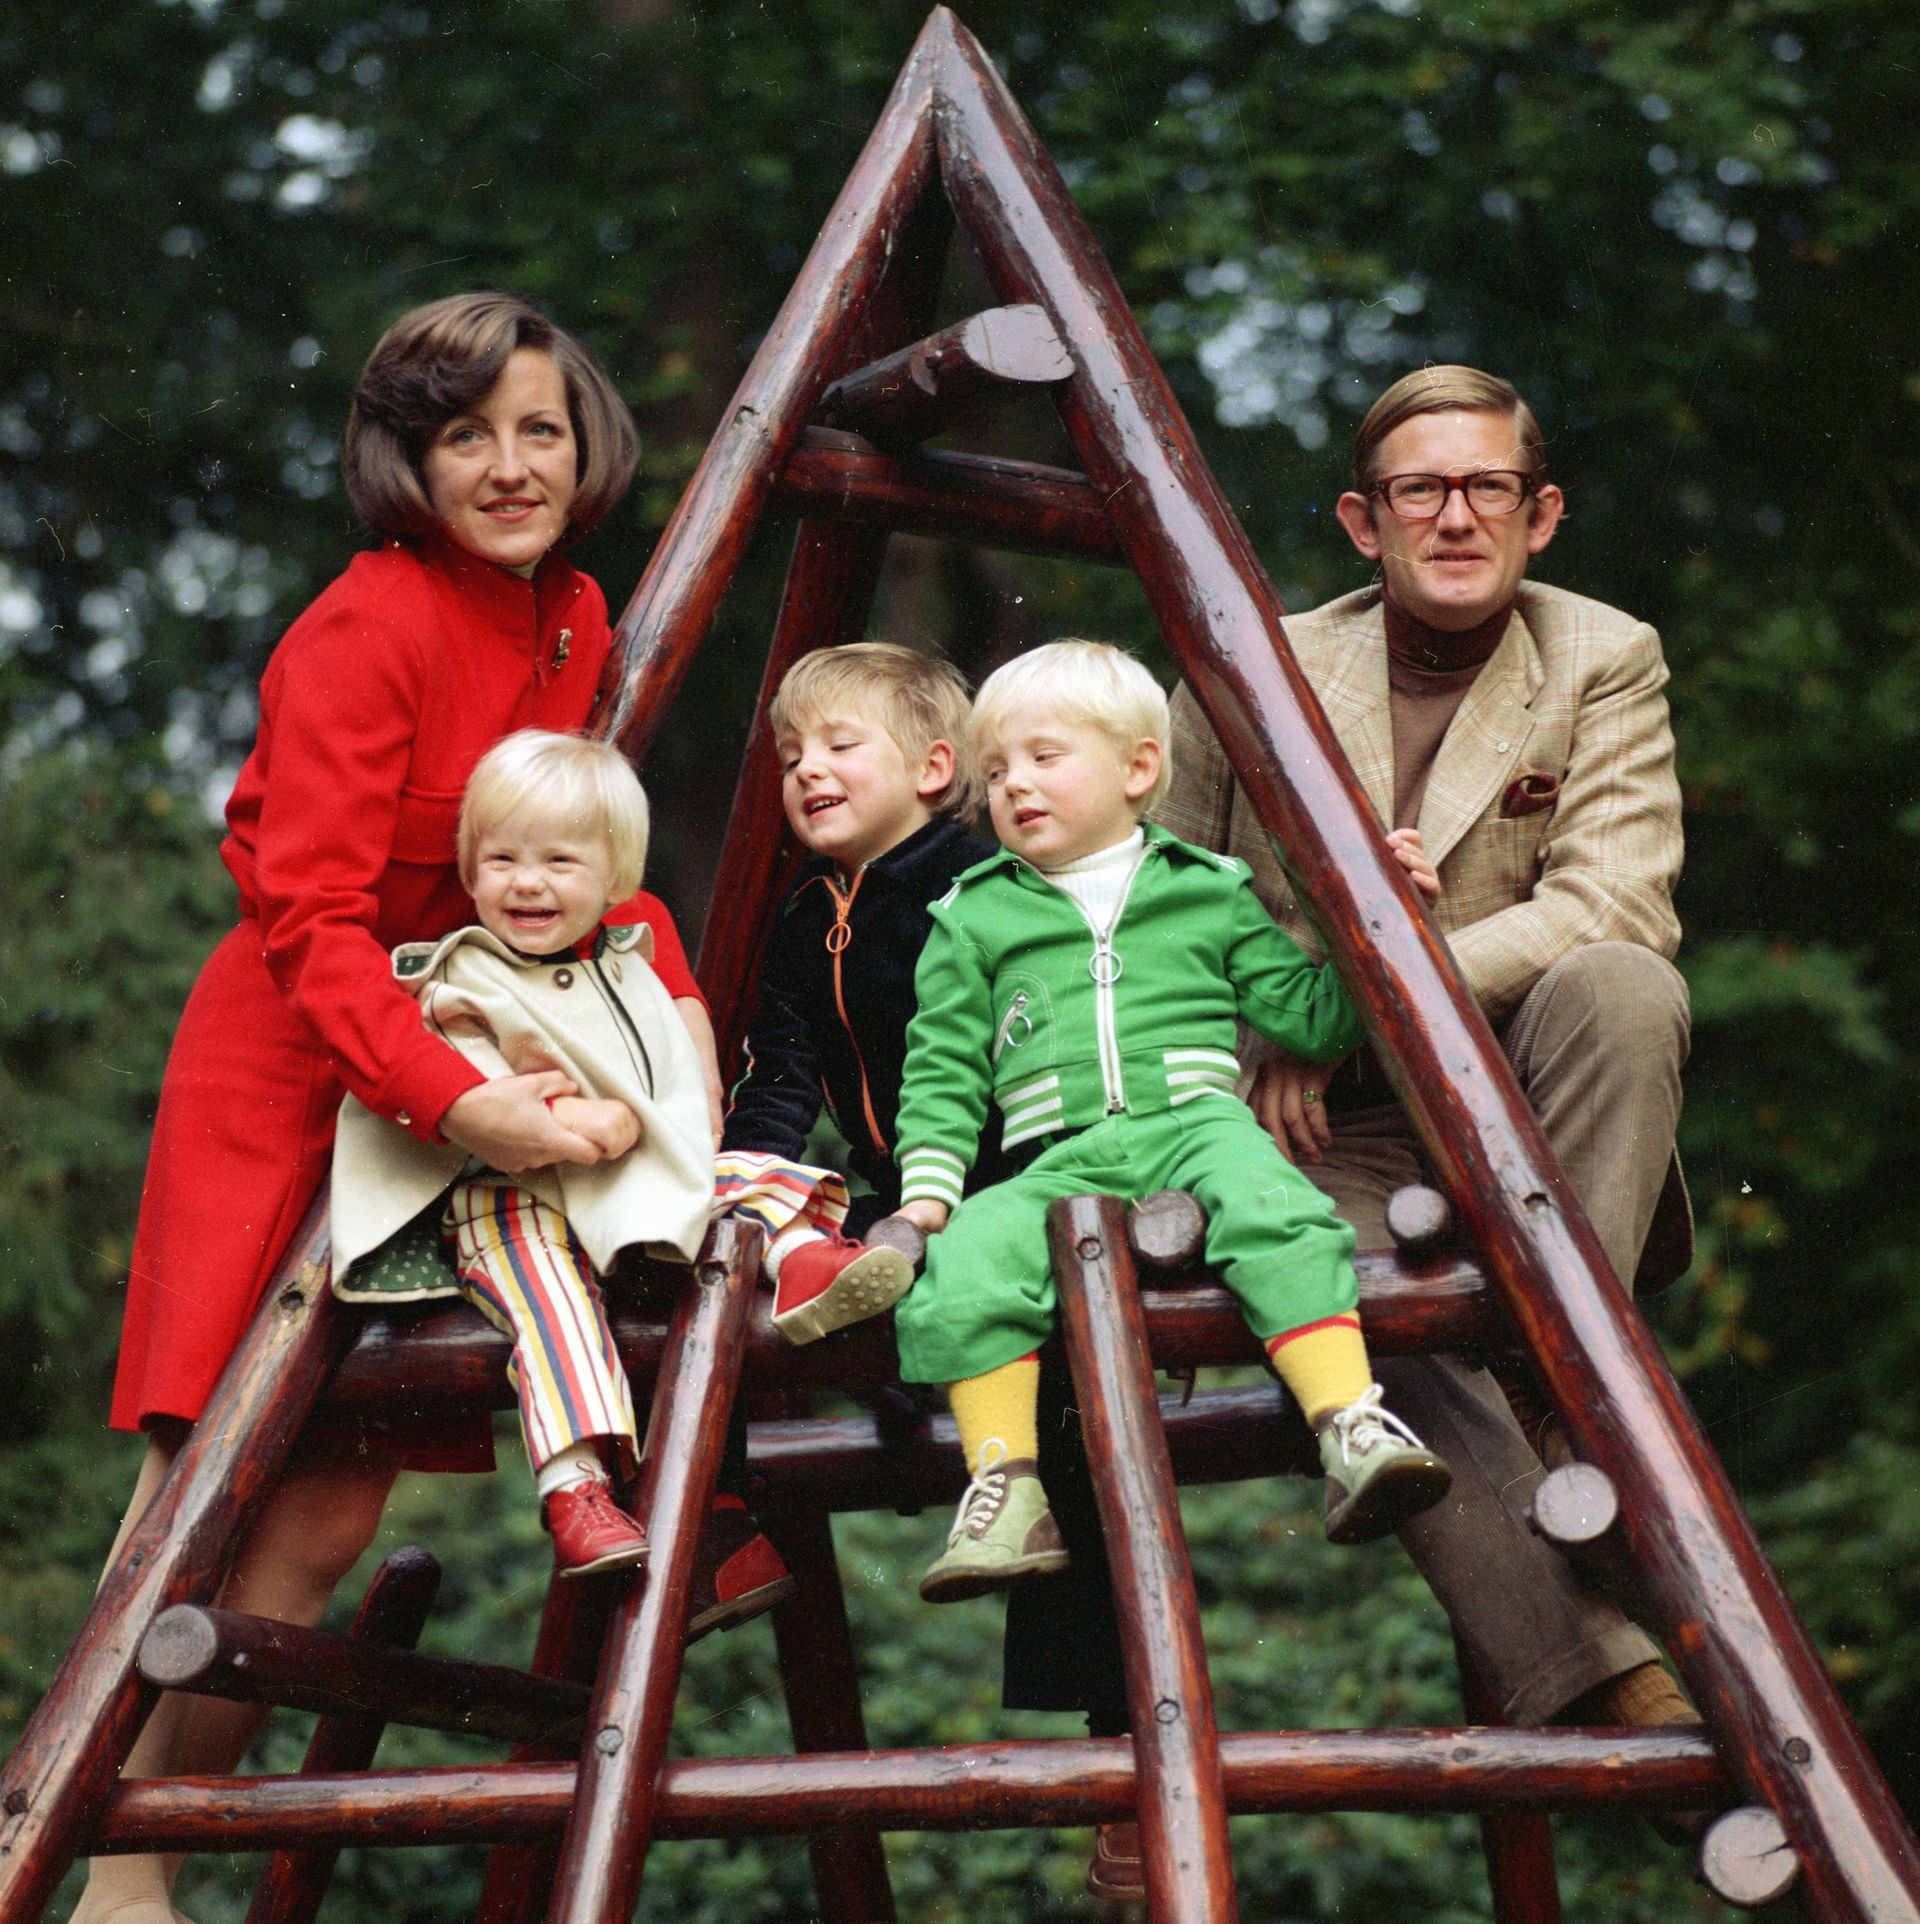 1973: prinses Margriet en Pieter van Vollenhoven met de prinsen Pieter-Christiaan, Maurits en